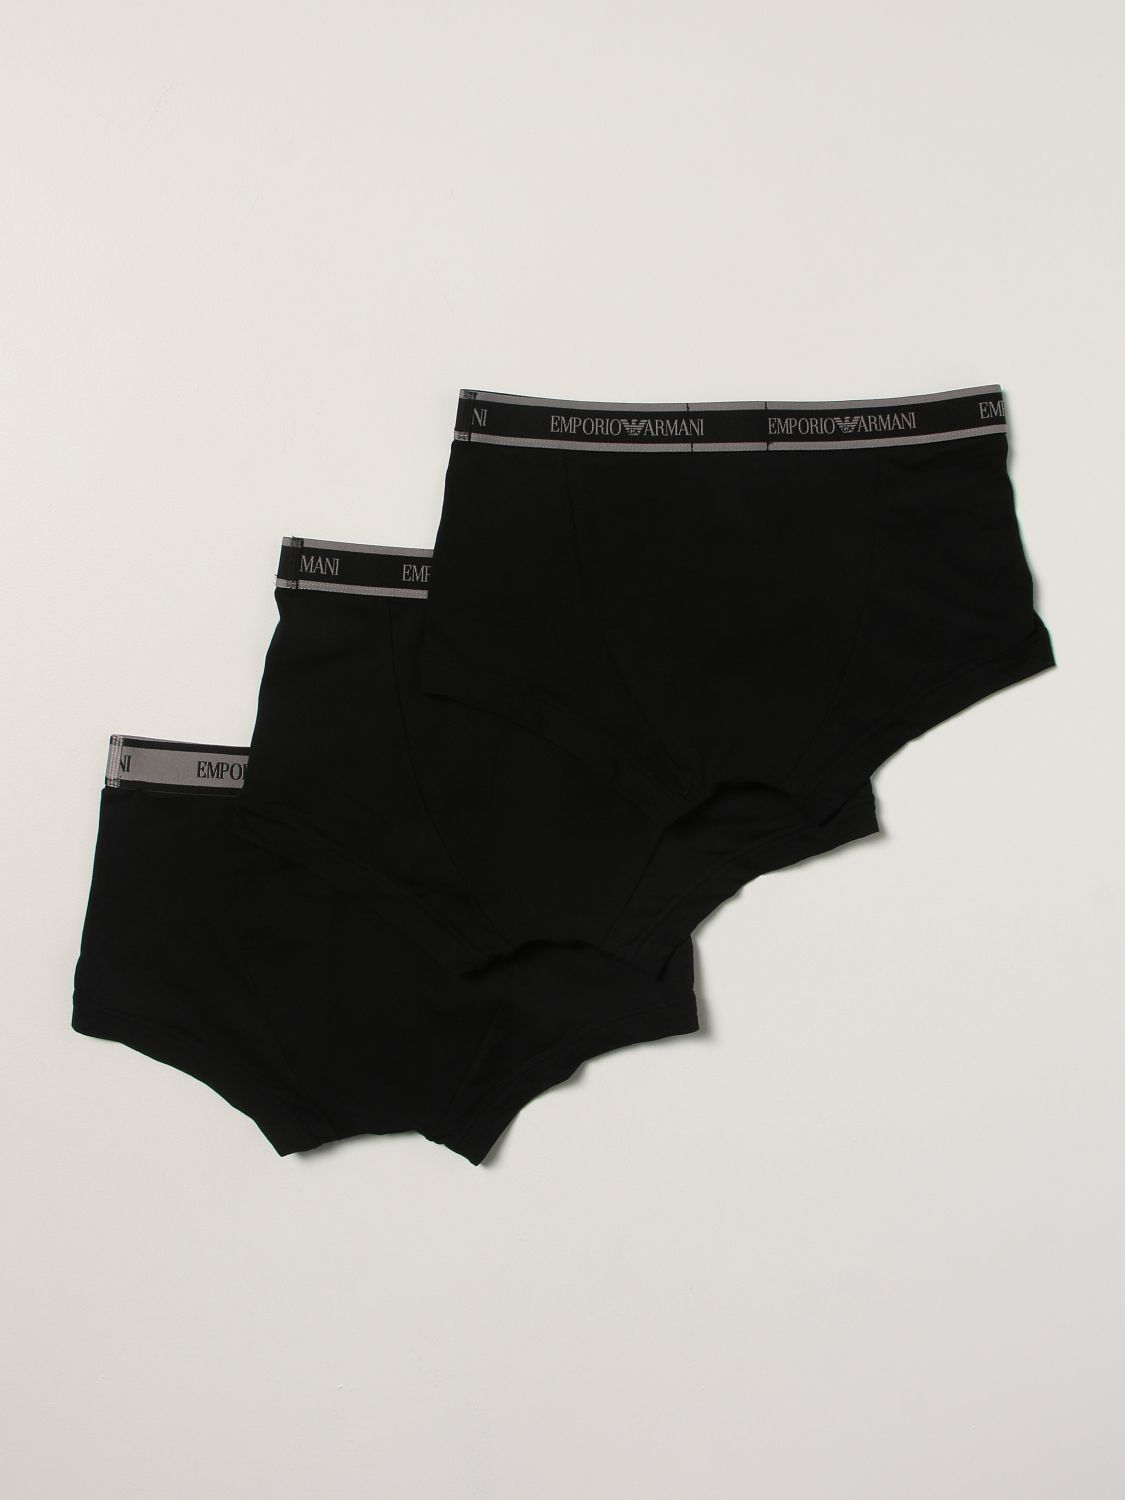 Underwear Emporio Armani: Set 3 Emporio Armani brief shorts with logo black 2